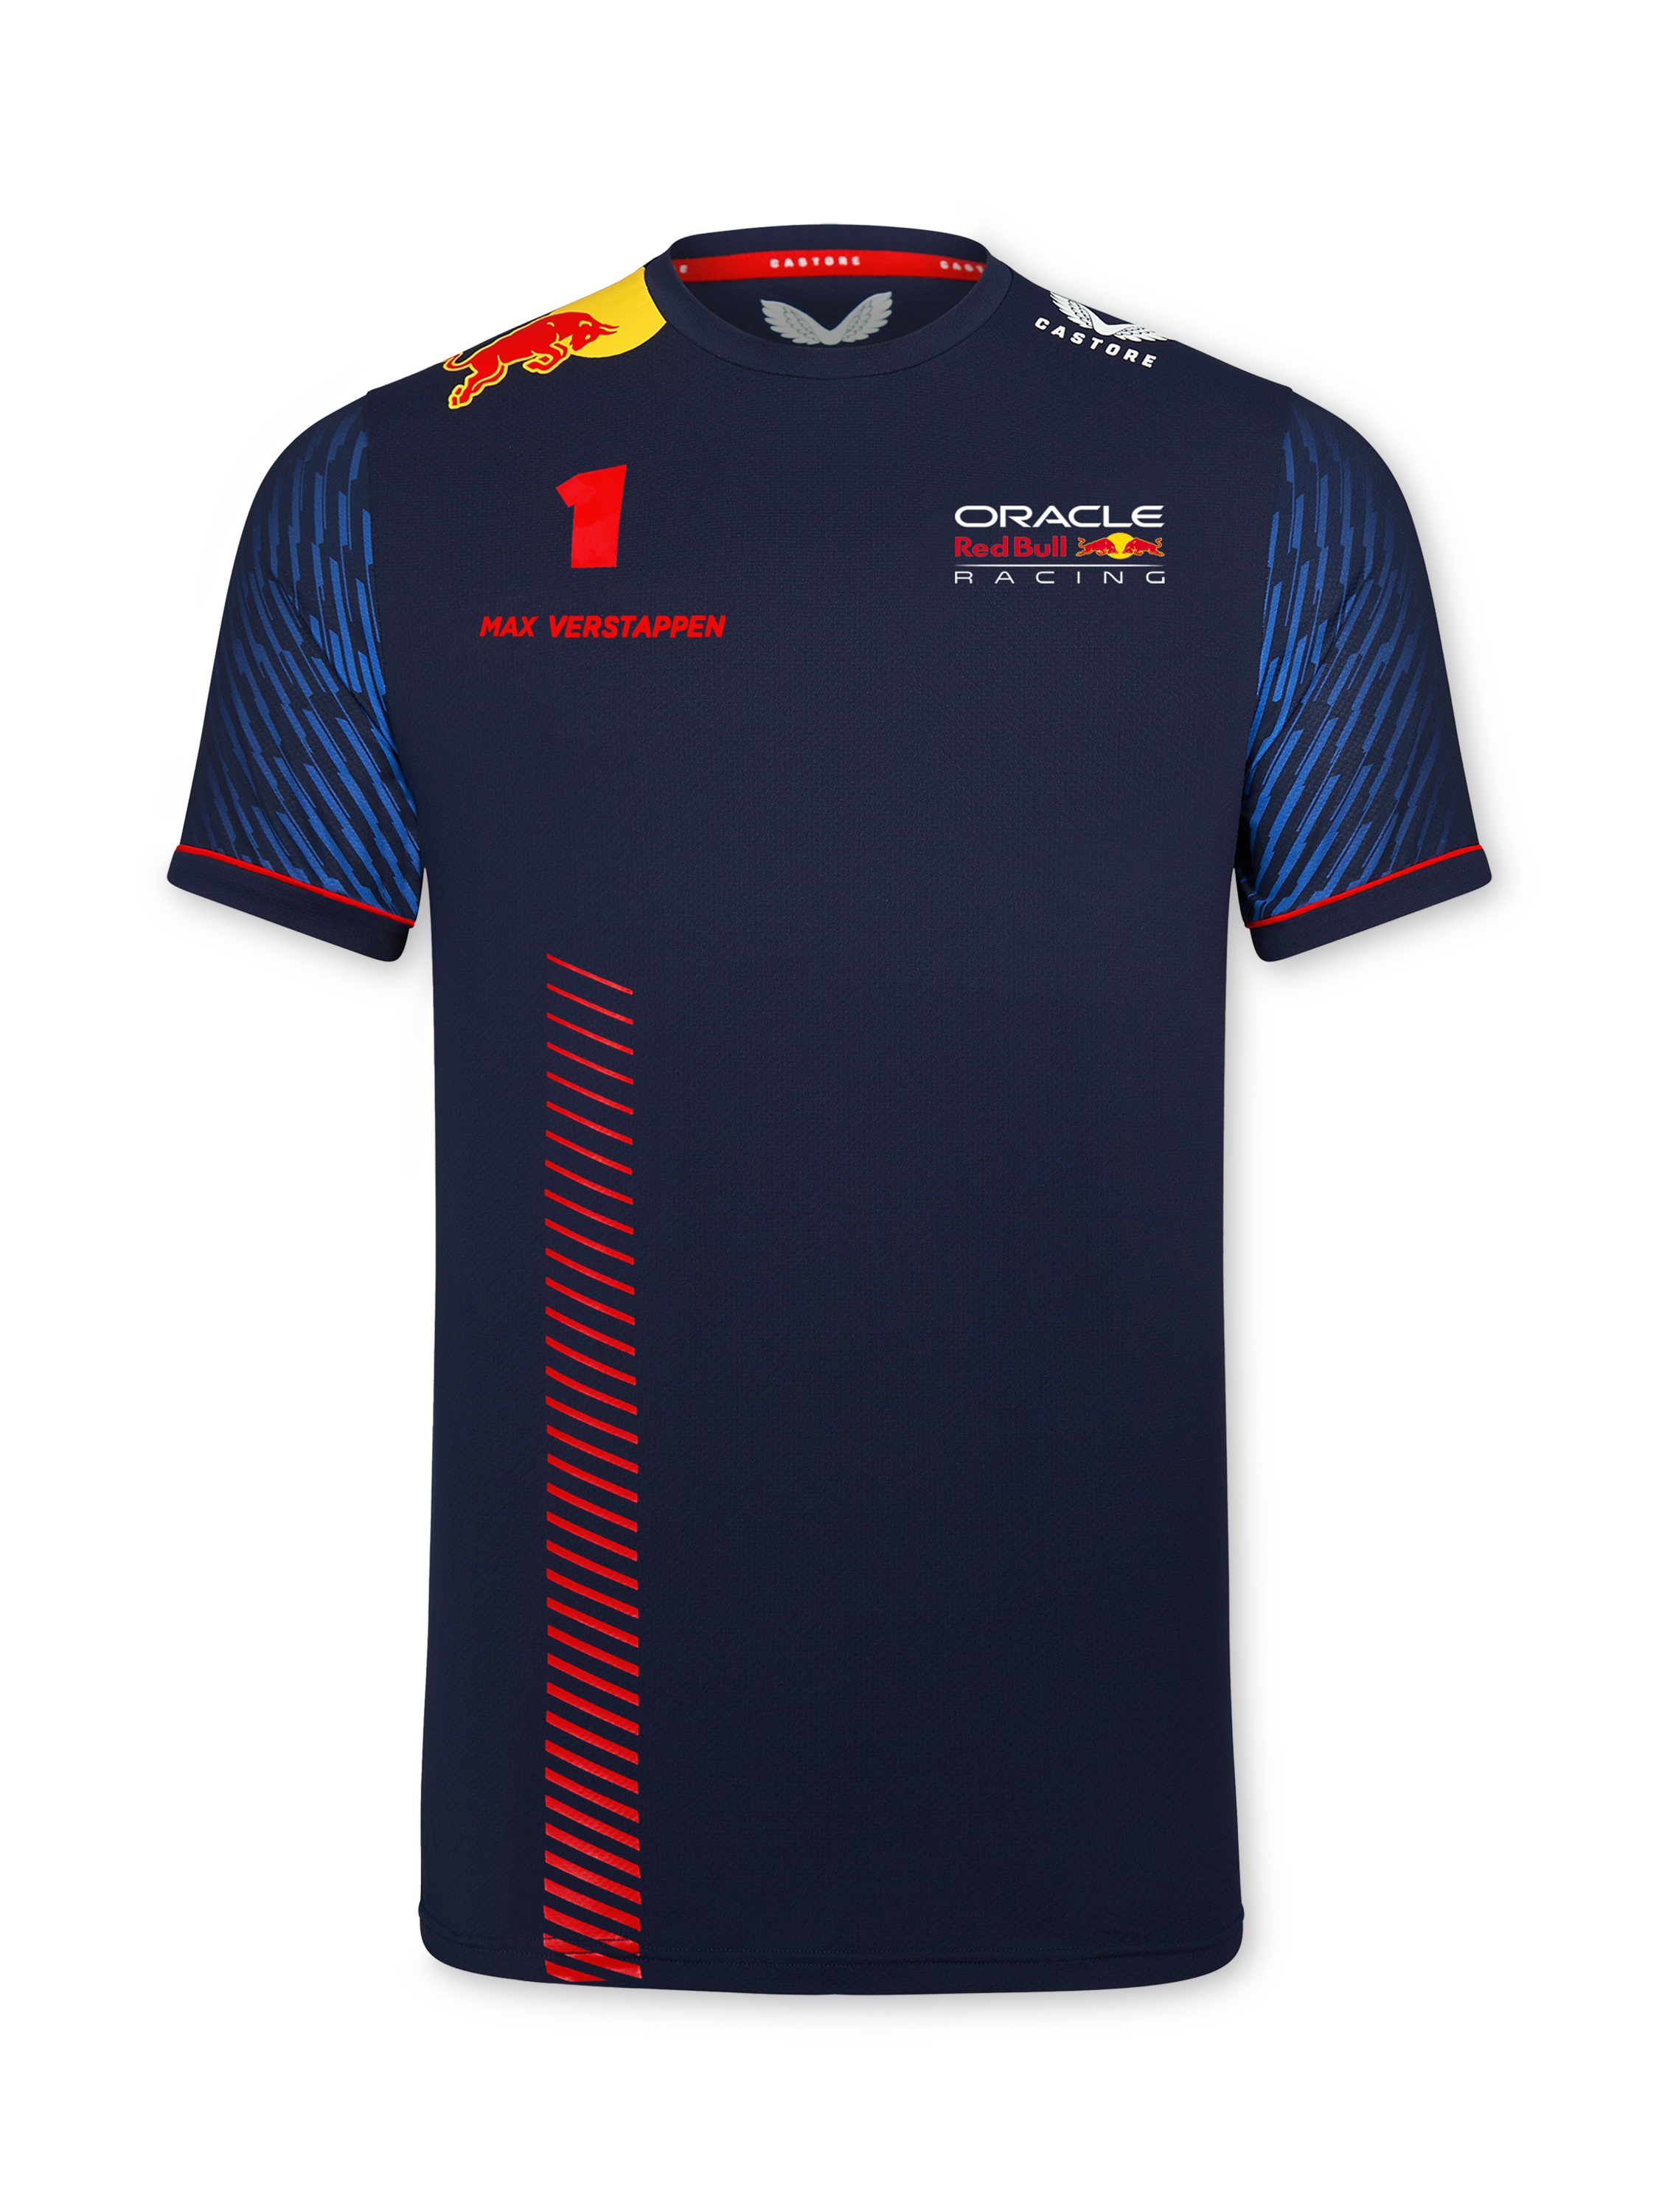 titel massa kleding stof Oracle Red Bull Racing Official Teamline Max Verstappen T-Shirt